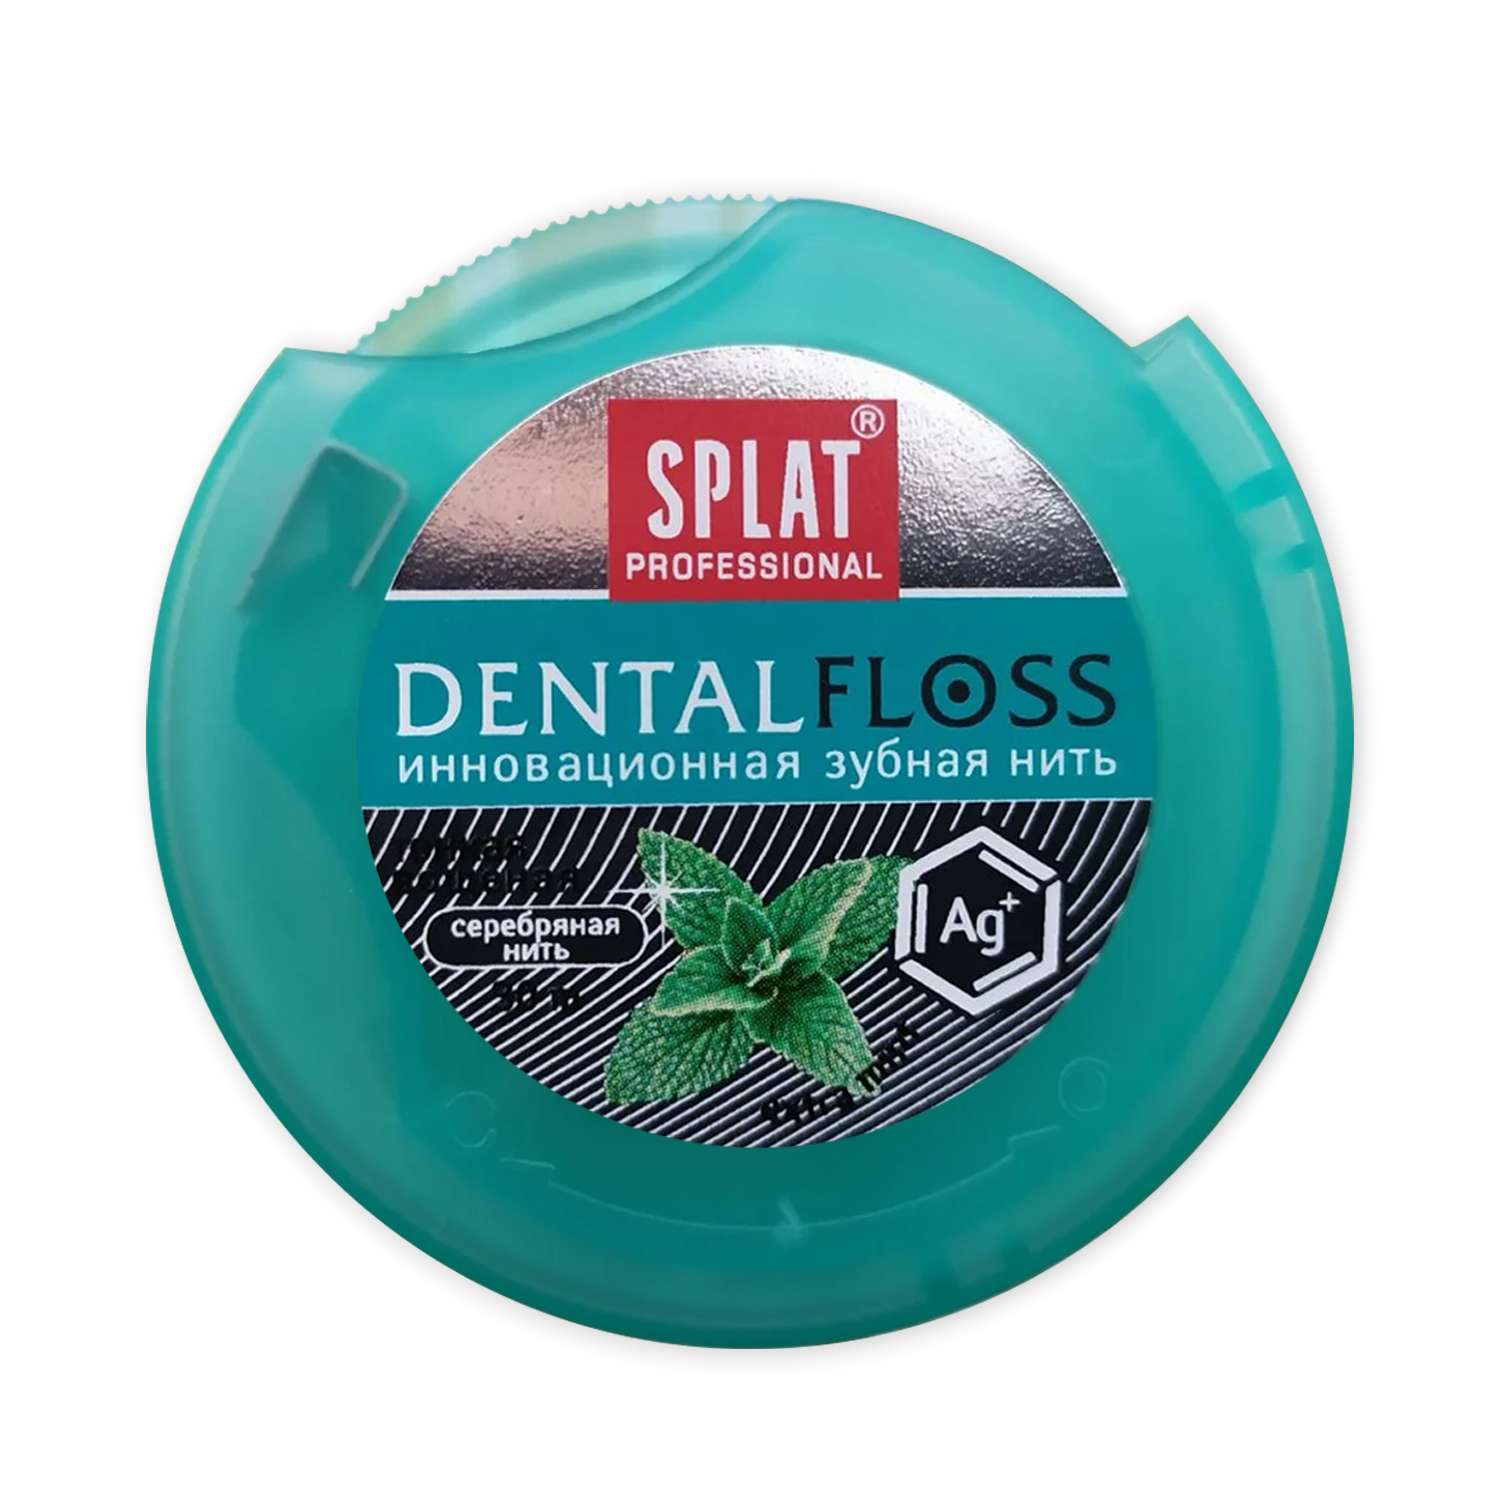 Зубная нить Splat Professional DentalFloss c волокнами серебра - фото 1